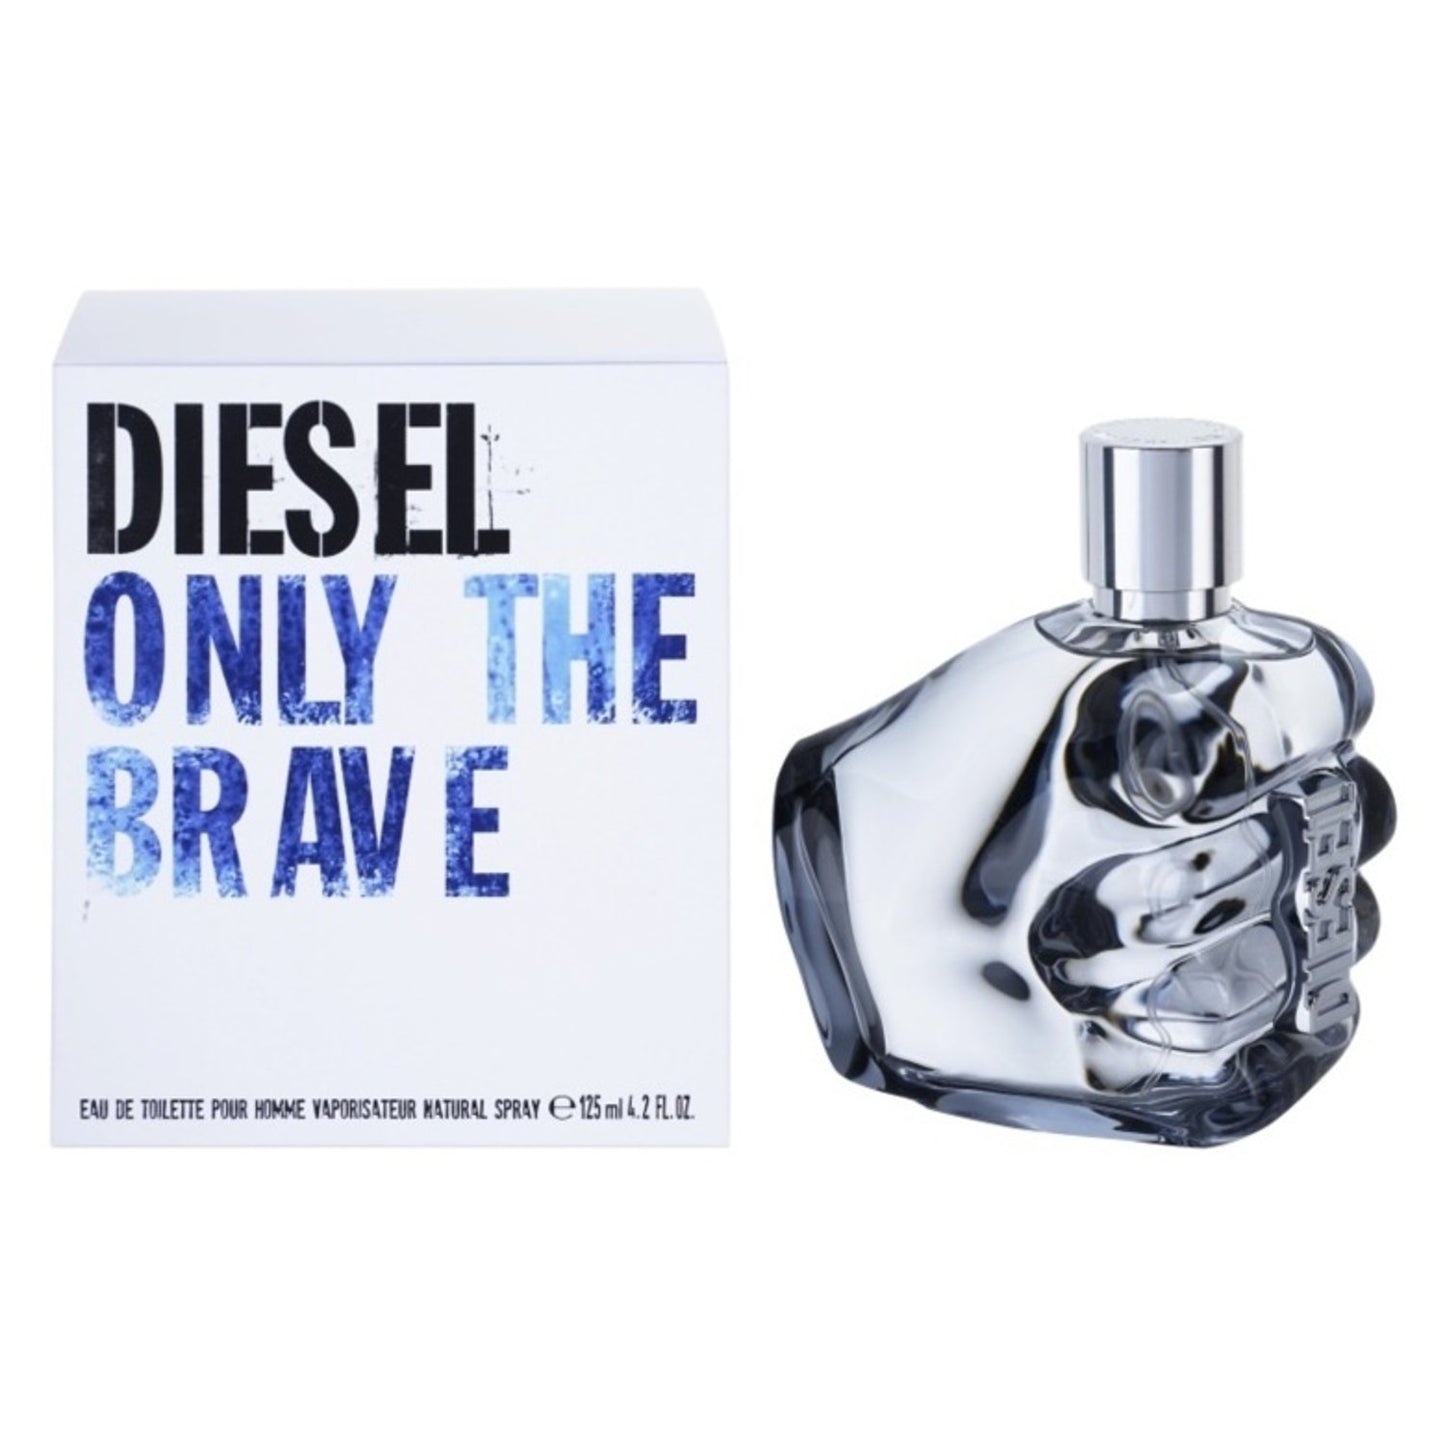 Diesel Only The Brave Man Eau de Toilette Pour Homme Spray 4.2 OZ